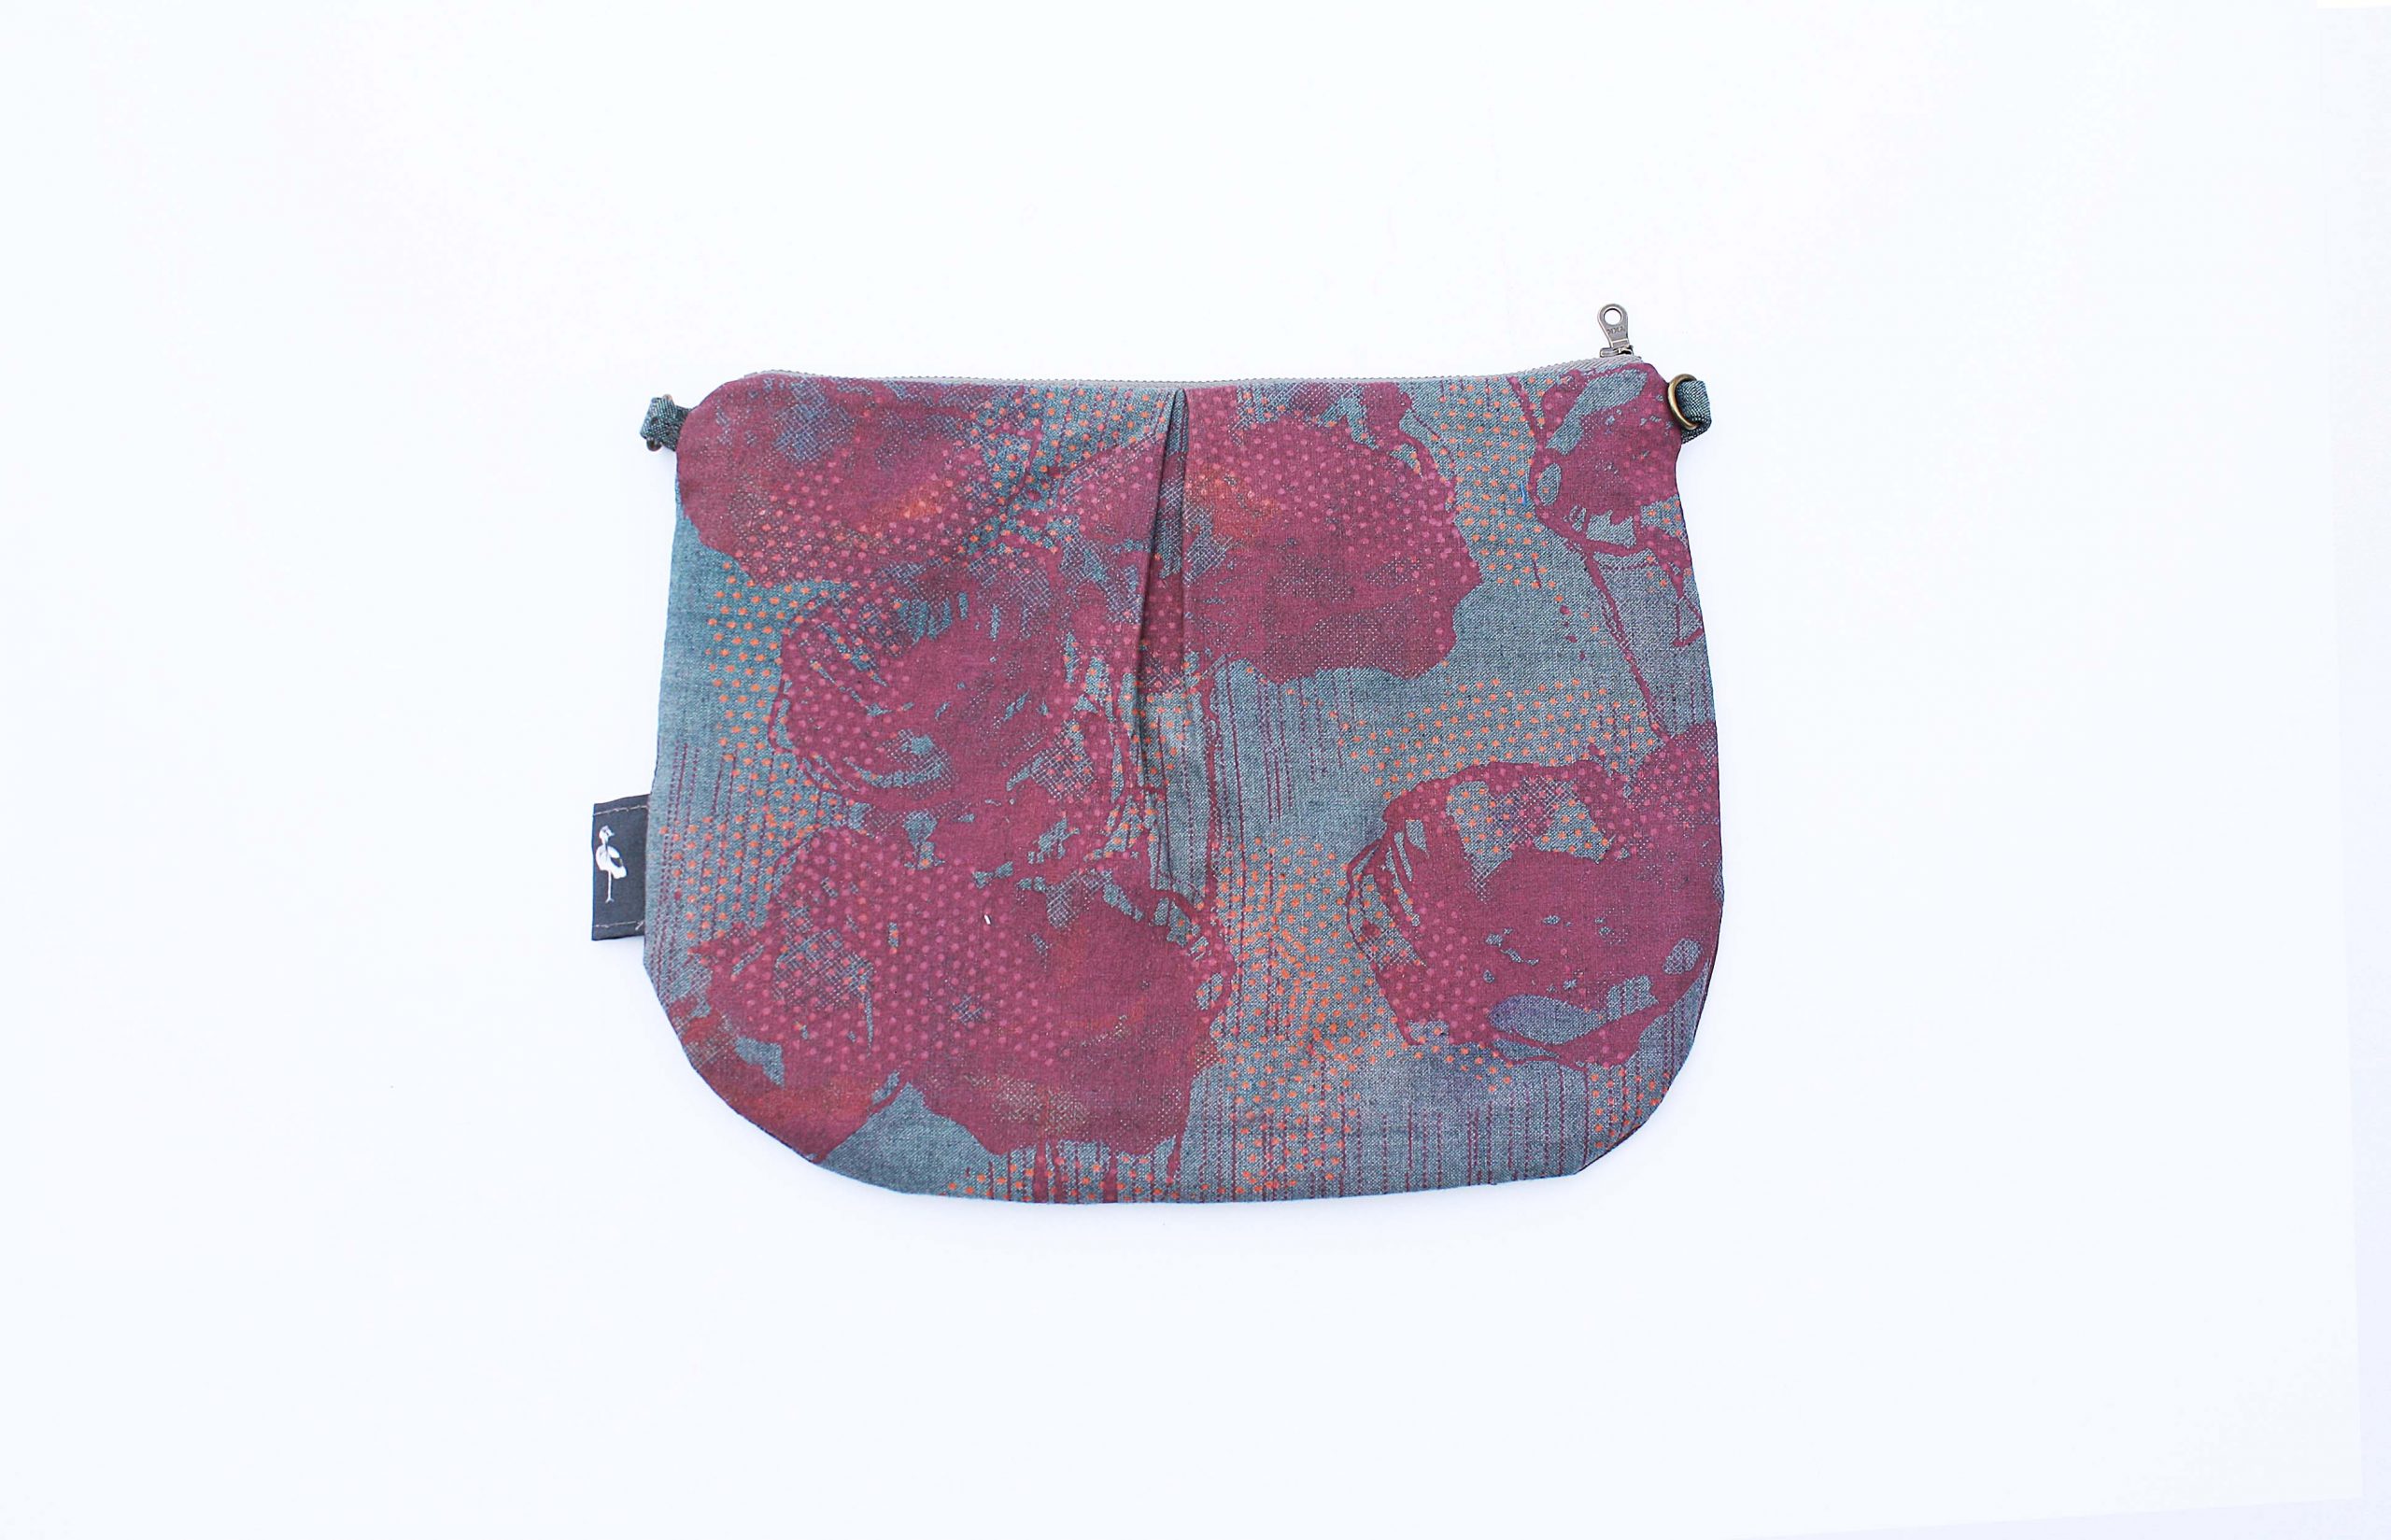 OGIO Brooklyn Tablet Purse Bag Crossbody Shoulder Strap Messenger Bag Red.  | eBay